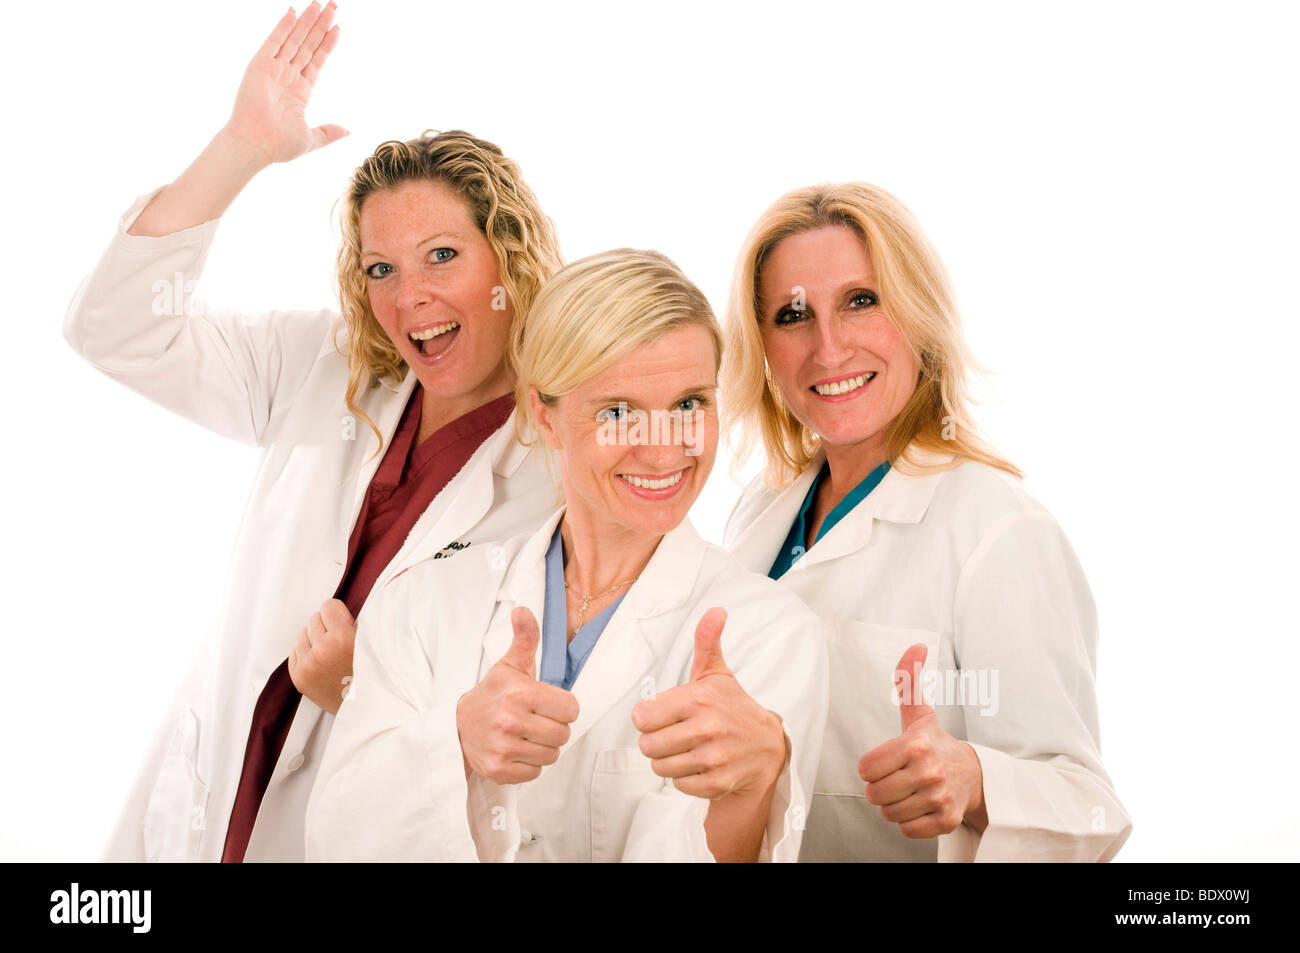 Trois infirmières infirmière de l'équipe dame Dames Femmes Groupe d'équipe assez sarrau o.r. veste blanche sourire smiling attractive positive Banque D'Images